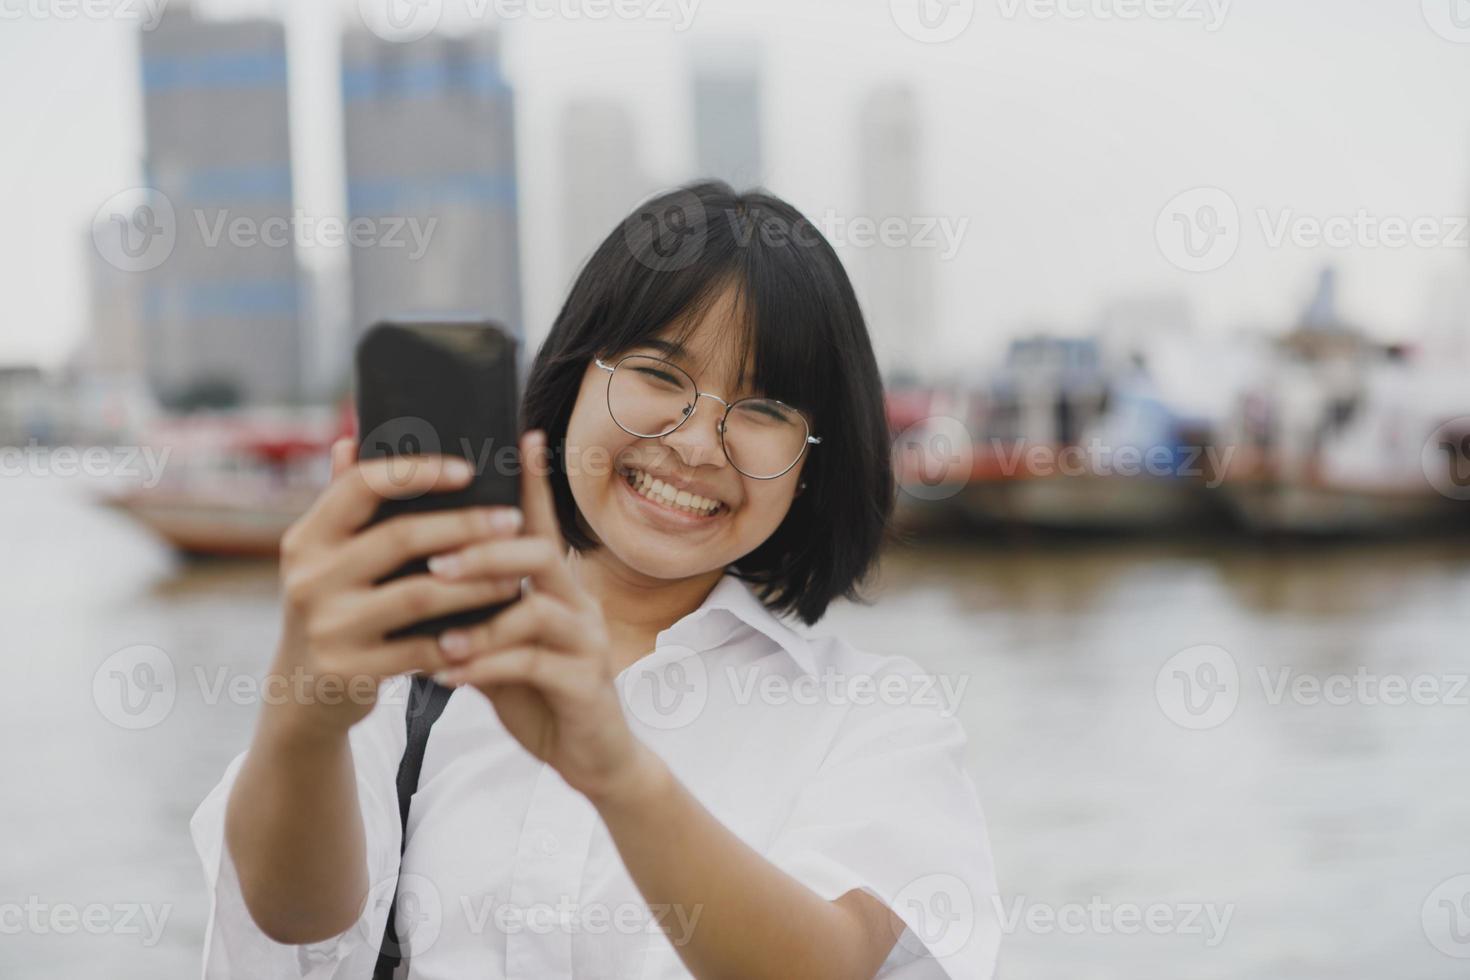 adolescente asiático com dentes sorrindo enquanto tira uma foto com o celular